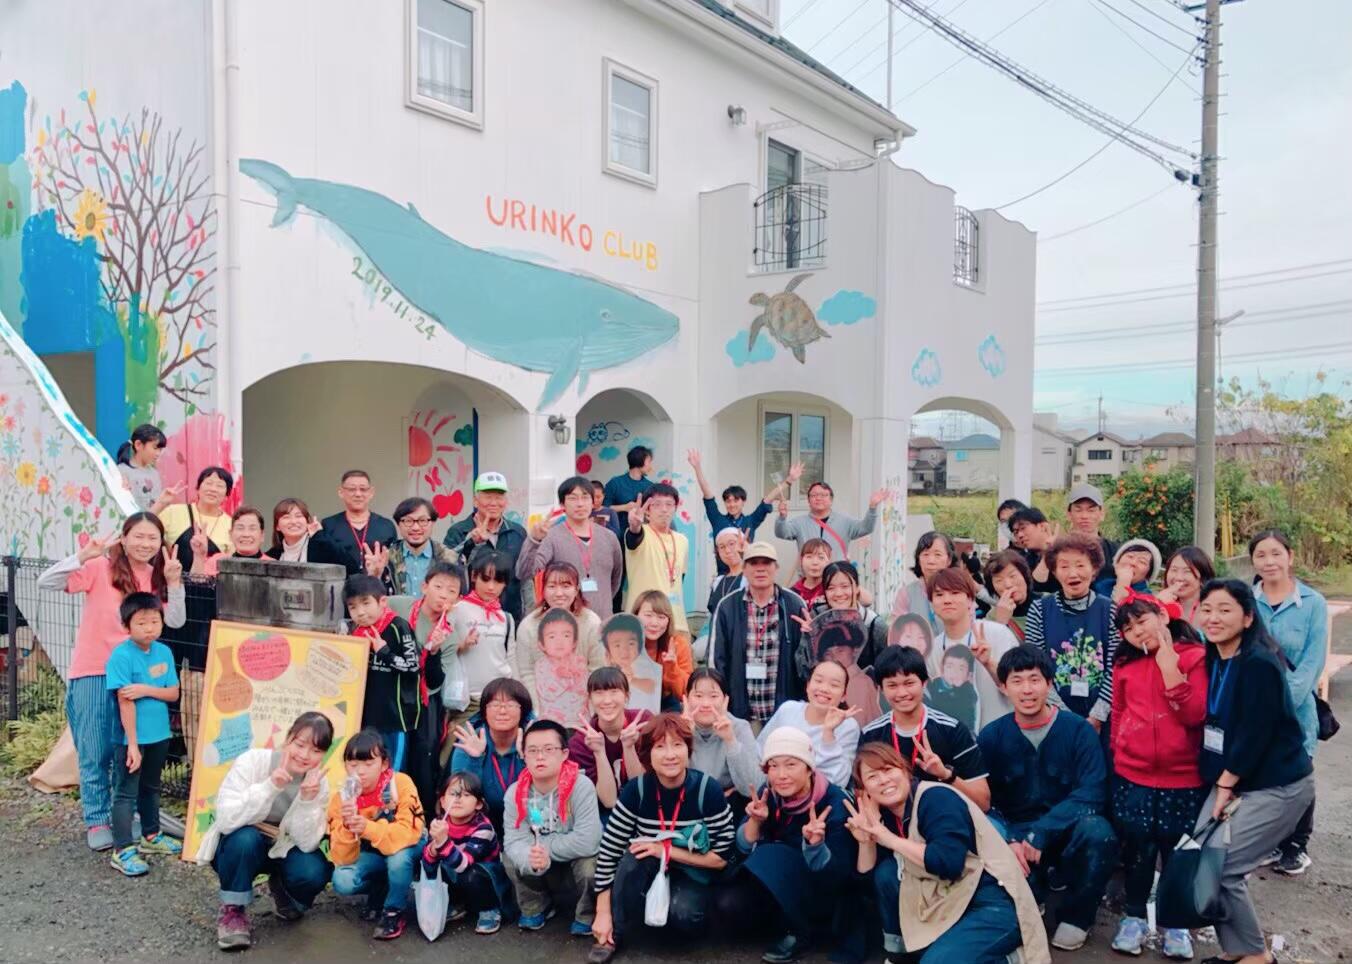 クジラやカメなどの絵が描かれた家を前に参加者と記念撮影。